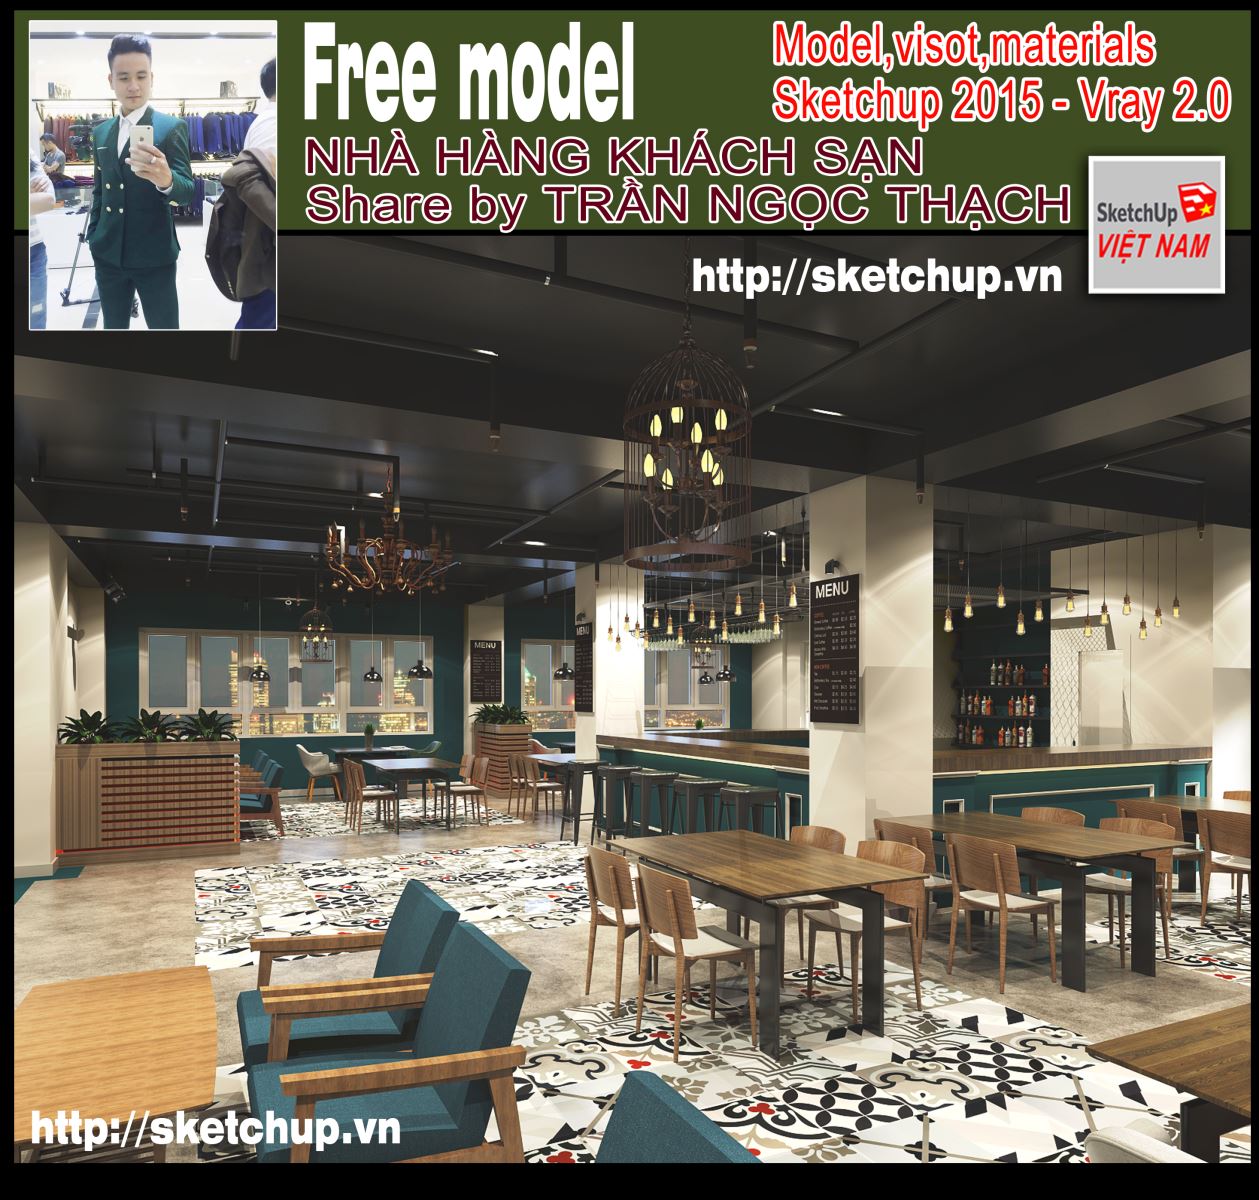 Model nhà hàng khách sạn - Shared by Trần Ngọc Thạch